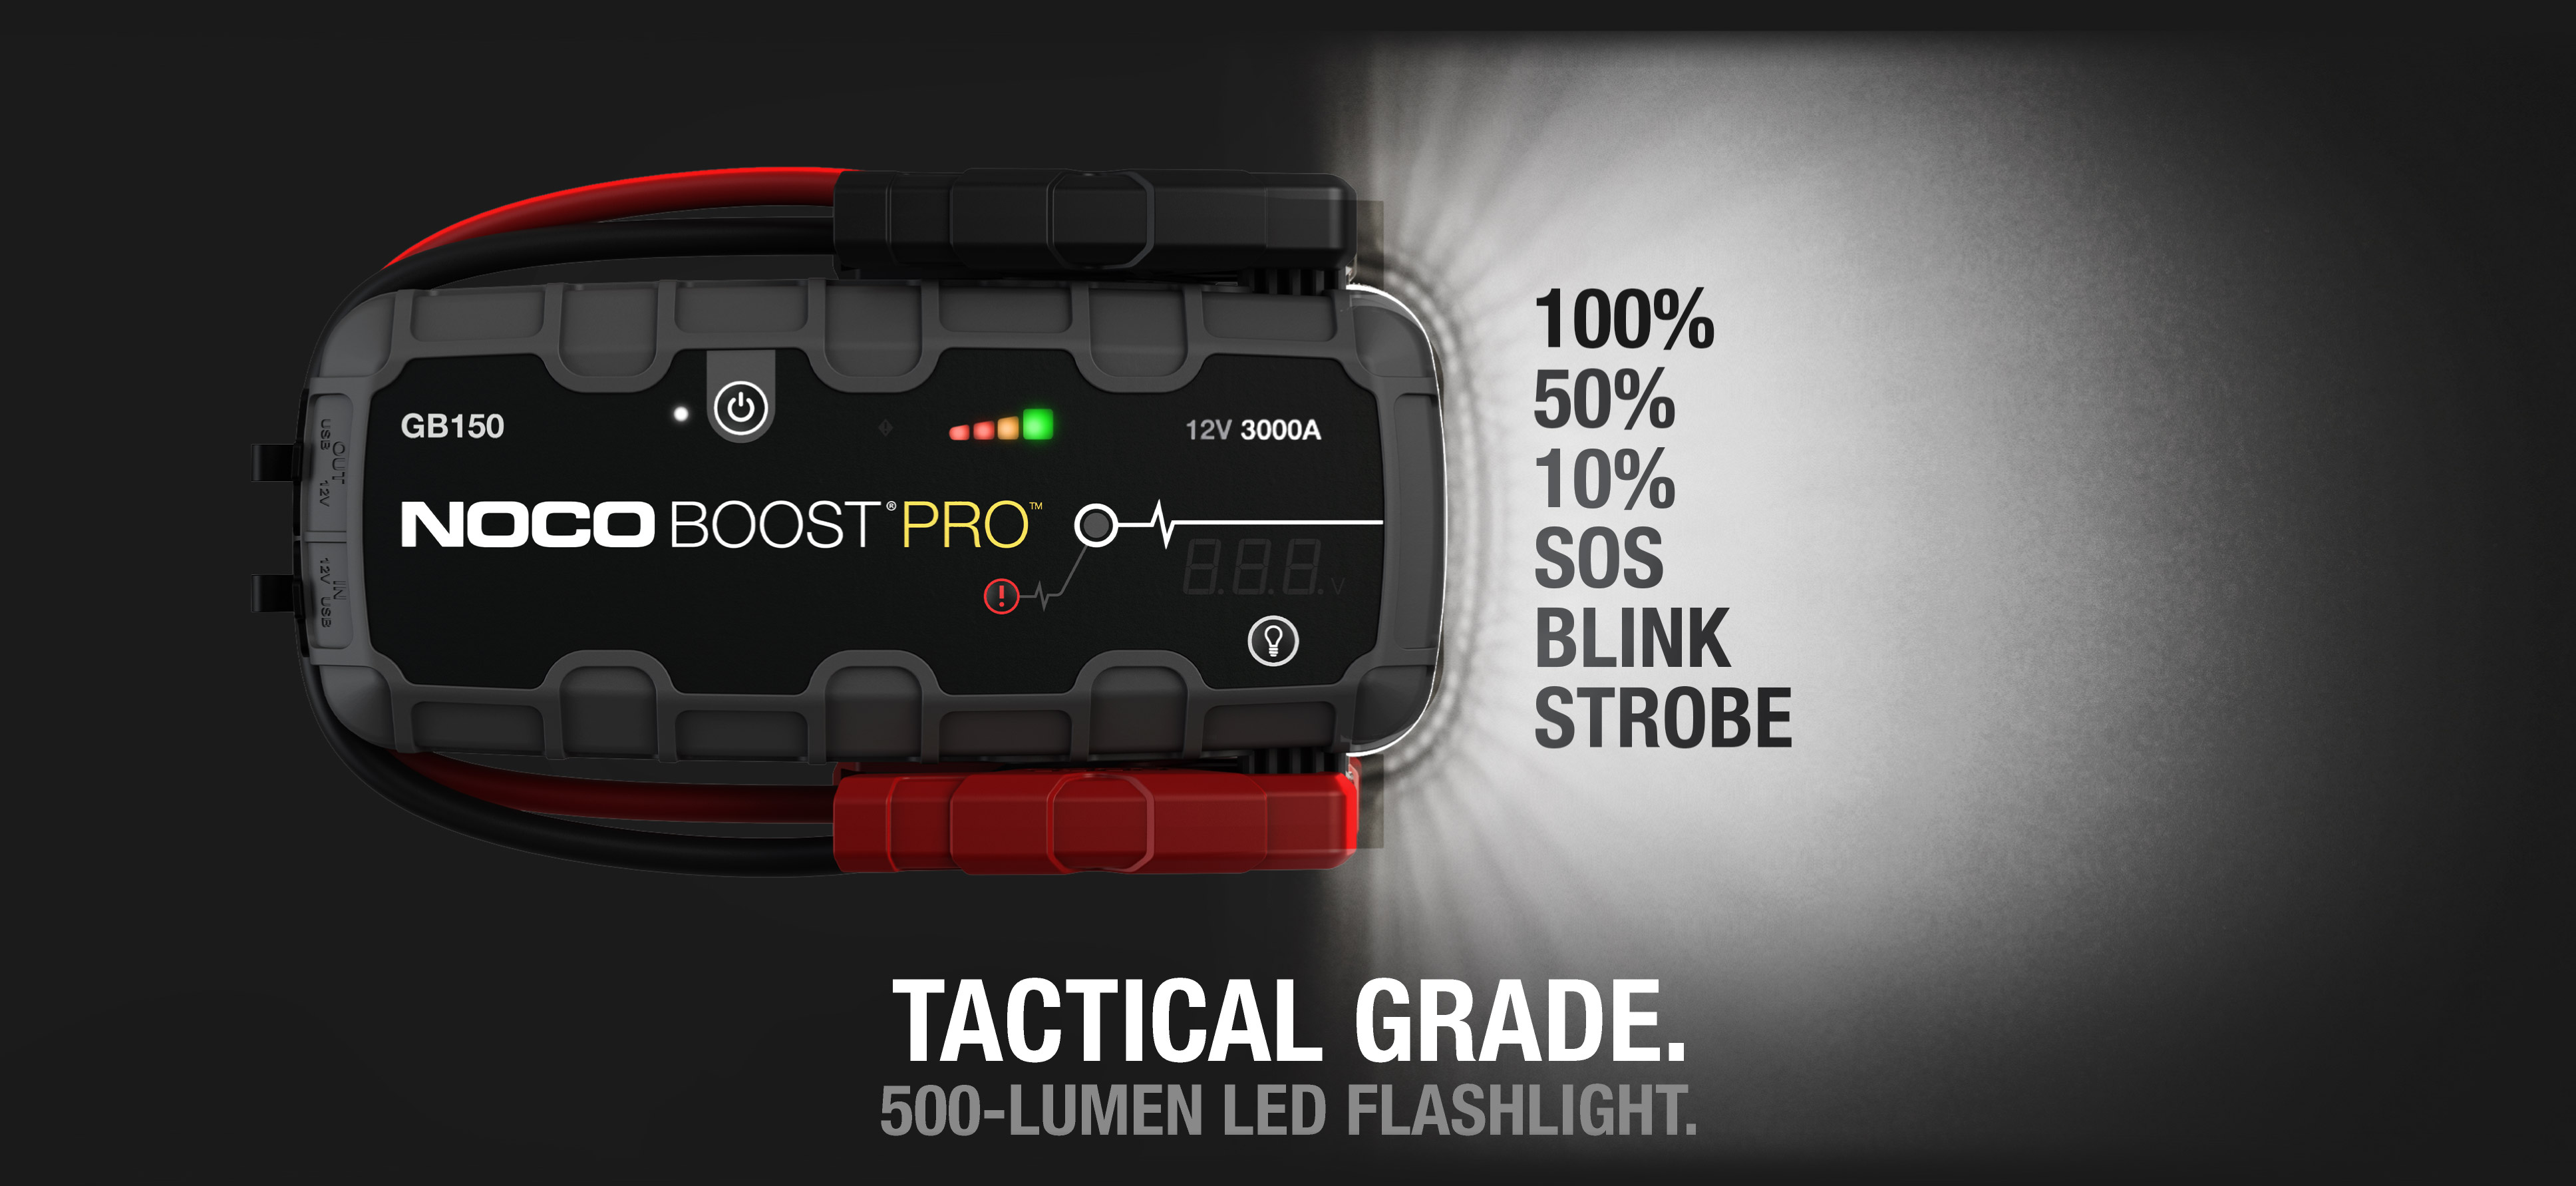 noco-gb150-boost-pro-3000a-500-lumen-led-flashlight-for-emergency2x.jpg